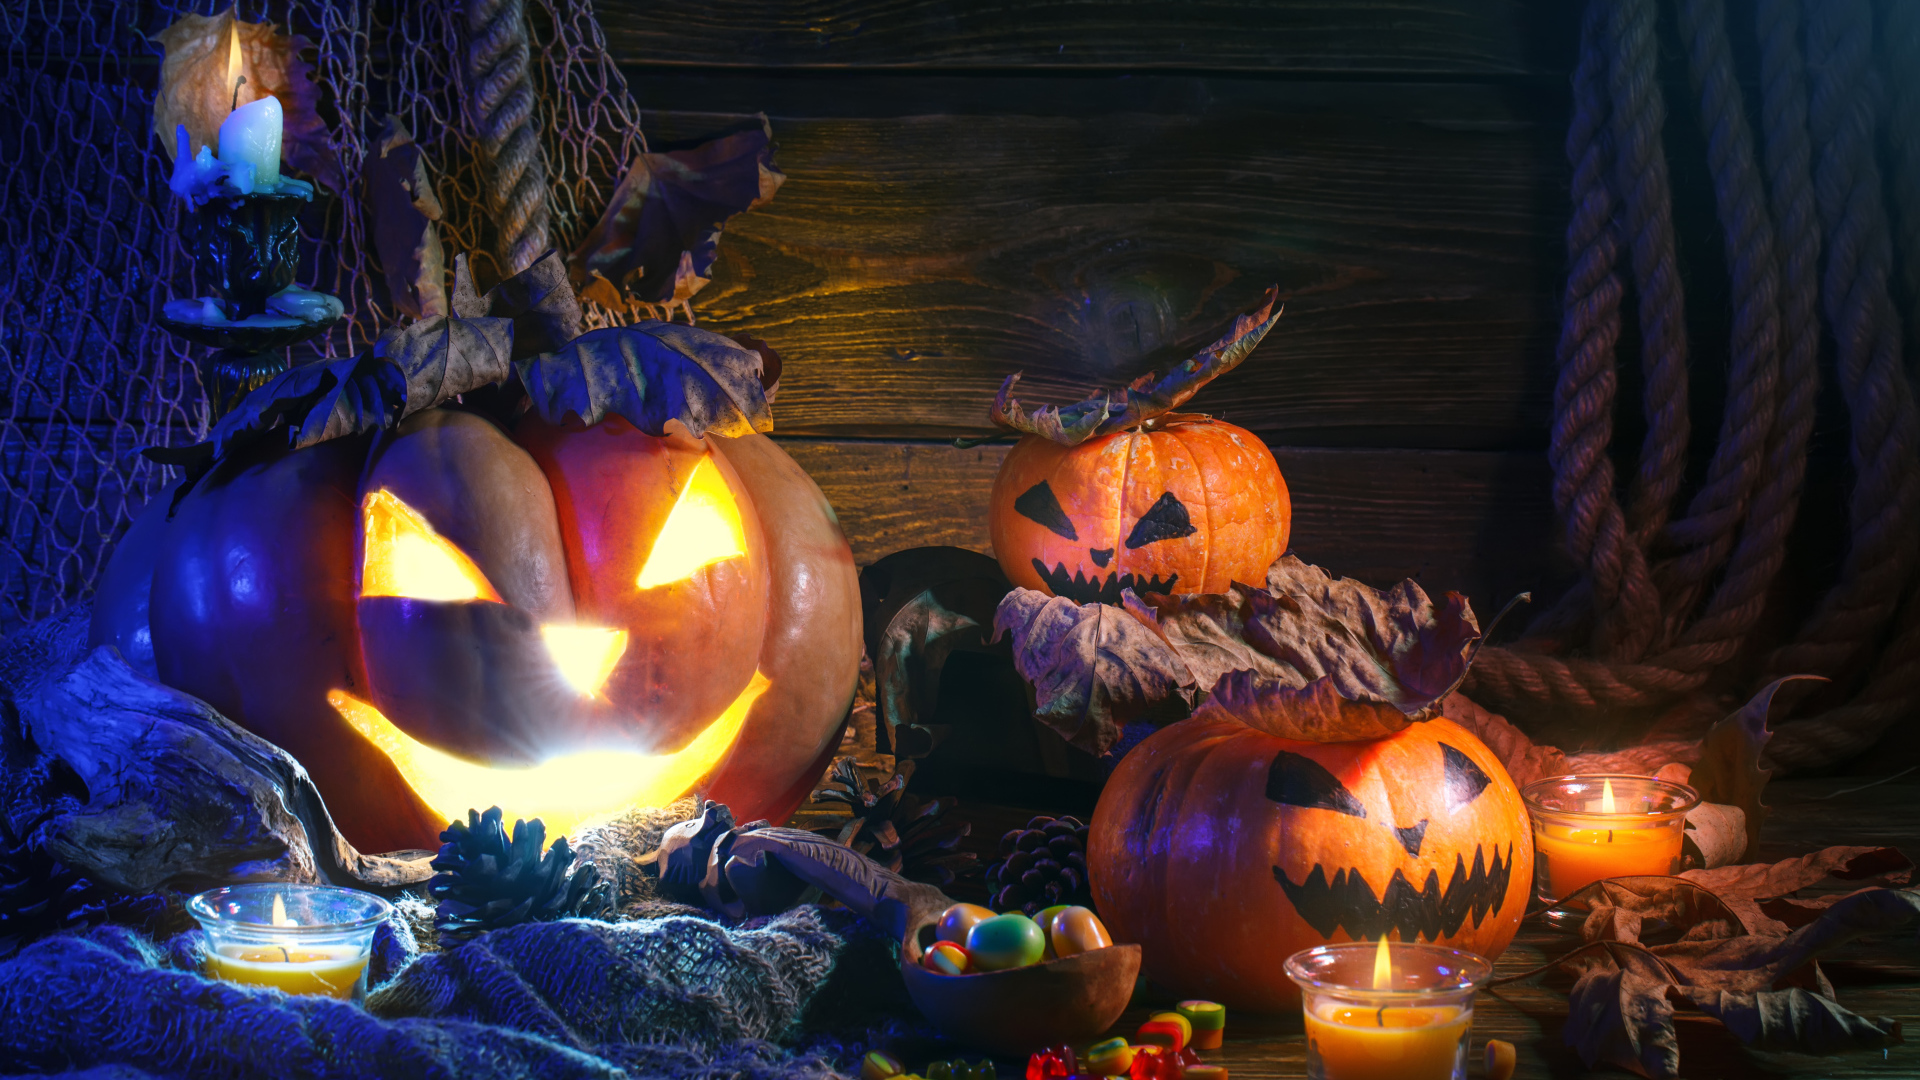 Pumpkin and sweets for Halloween Desktop wallpaper 1920x1080